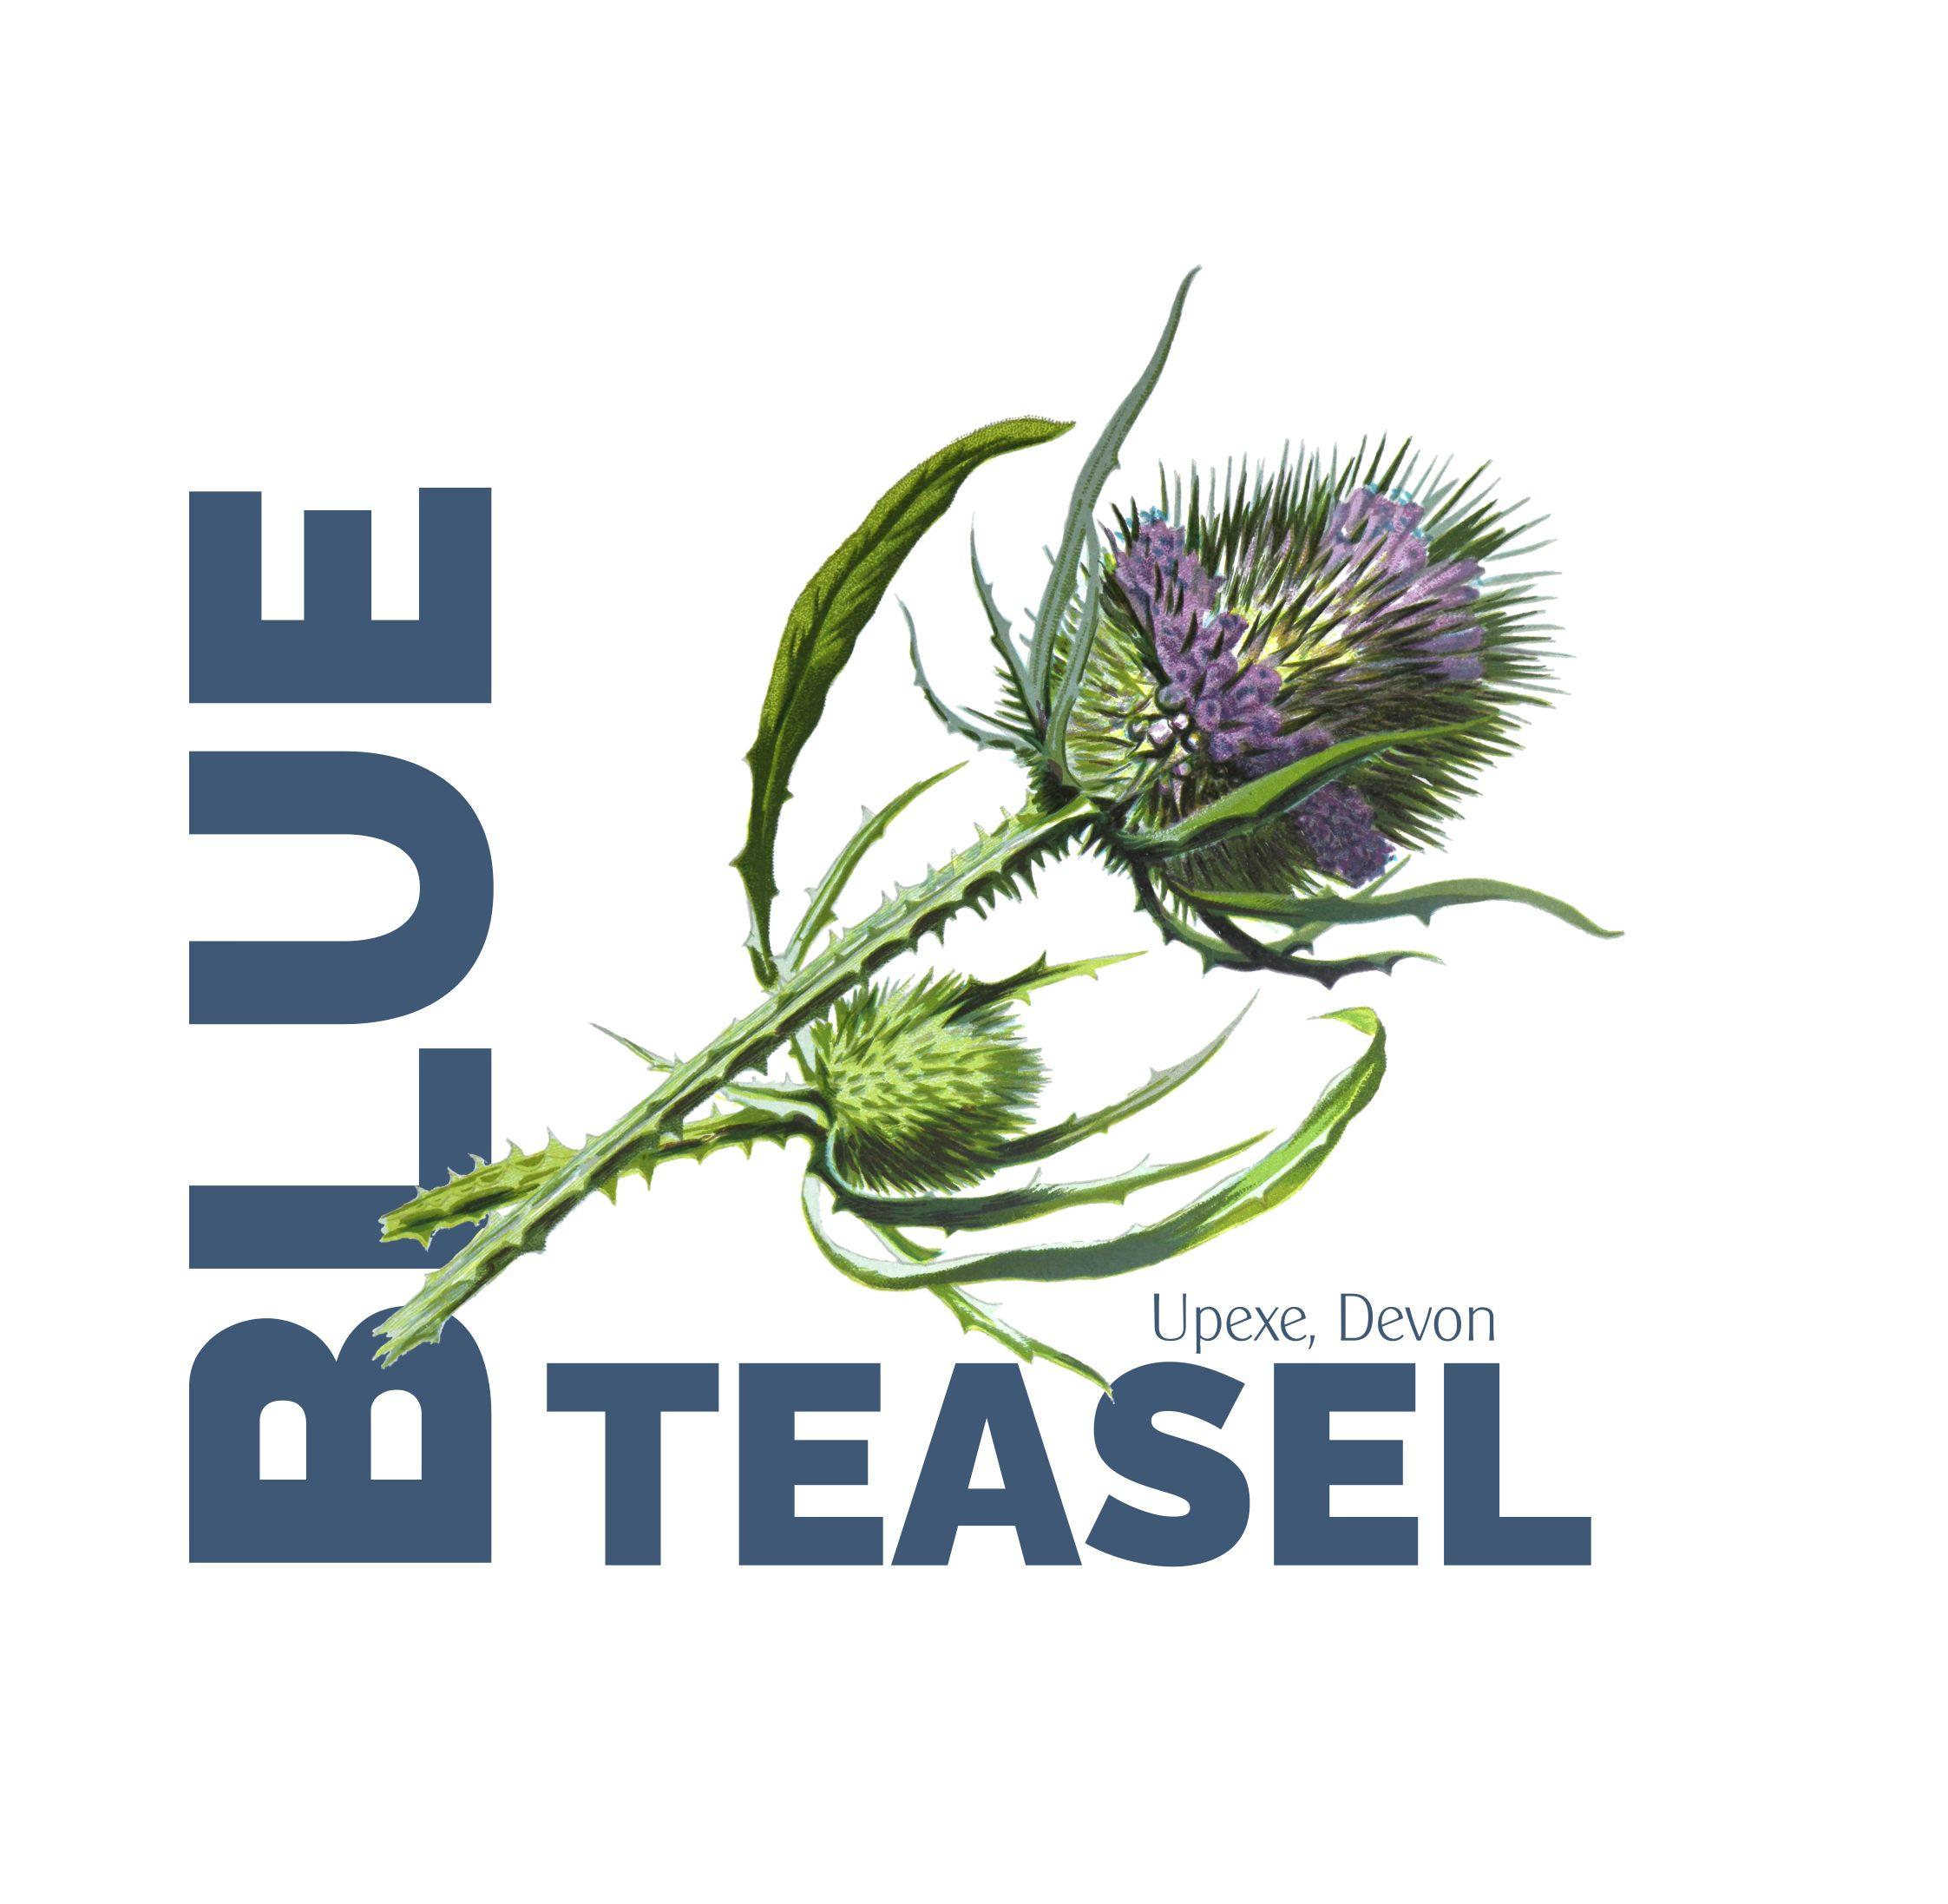 Blue Teasel Branding & Website